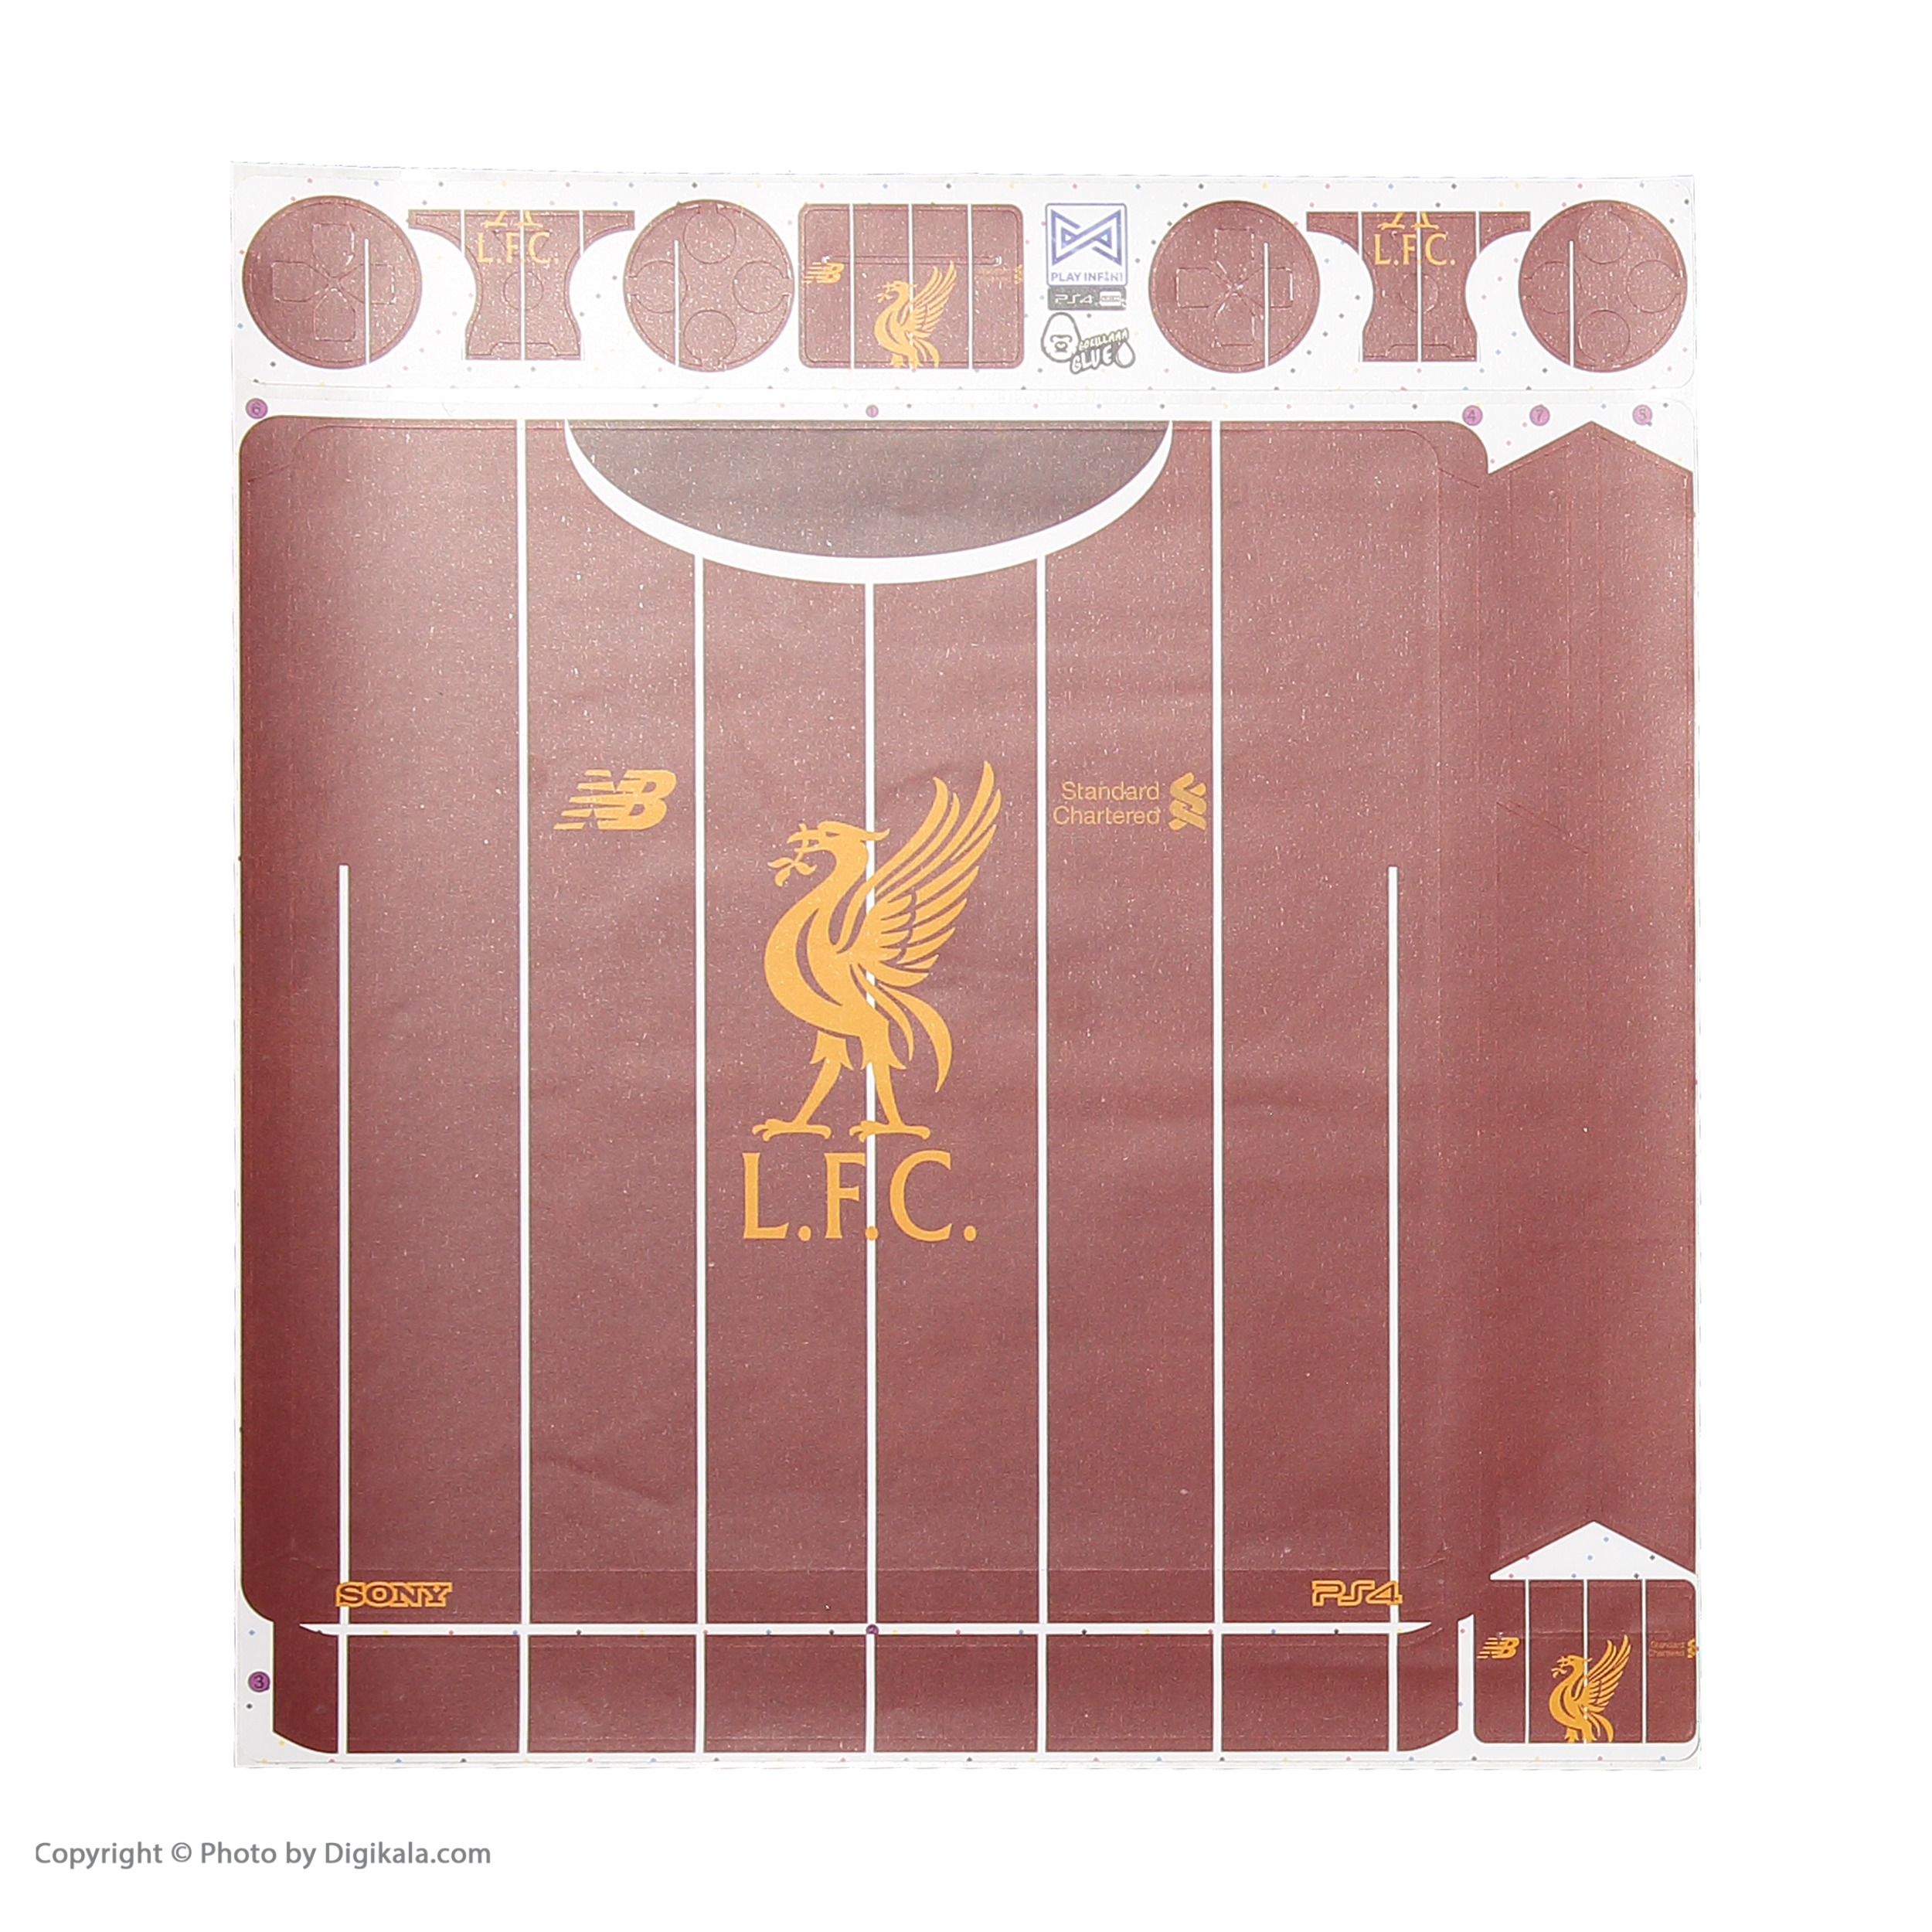 برچسب پلی استیشن 4 اسلیم پلی اینفینی مدل Liverpool FC به همراه برچسب دسته